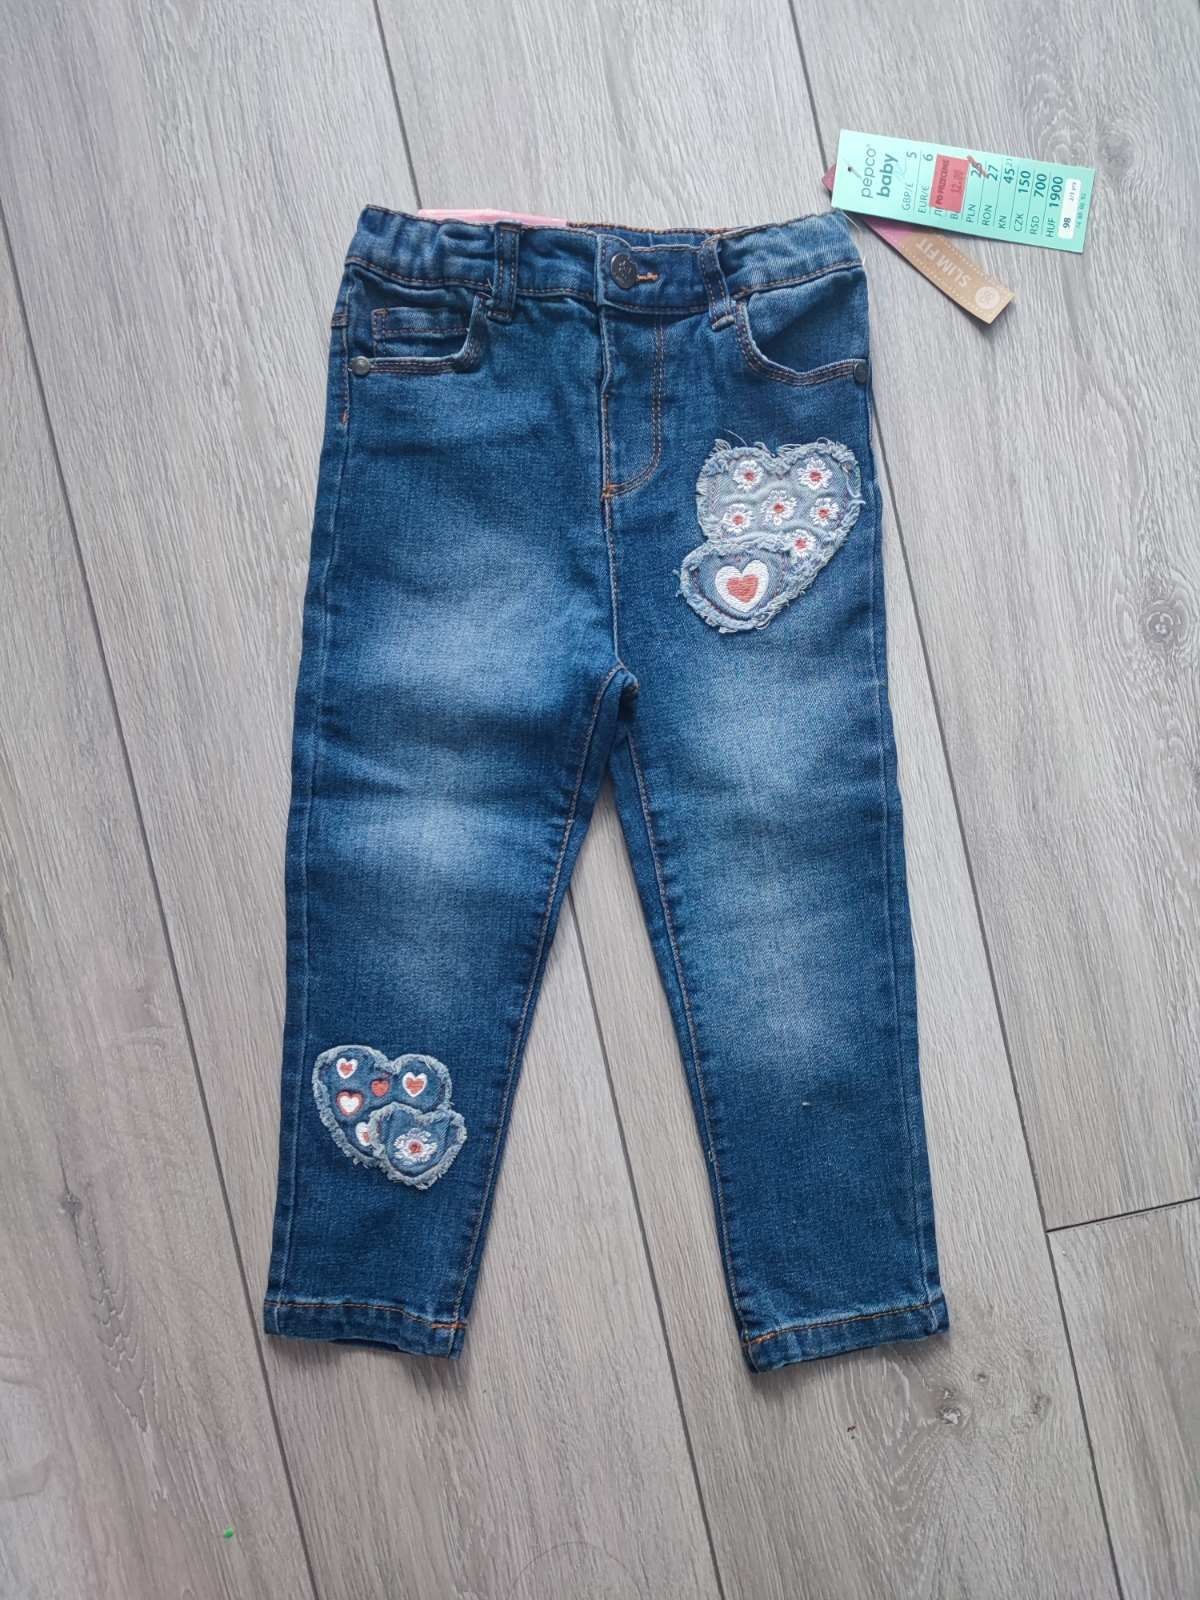 Джинси, штани для дівчинки 98 розмір, джинс